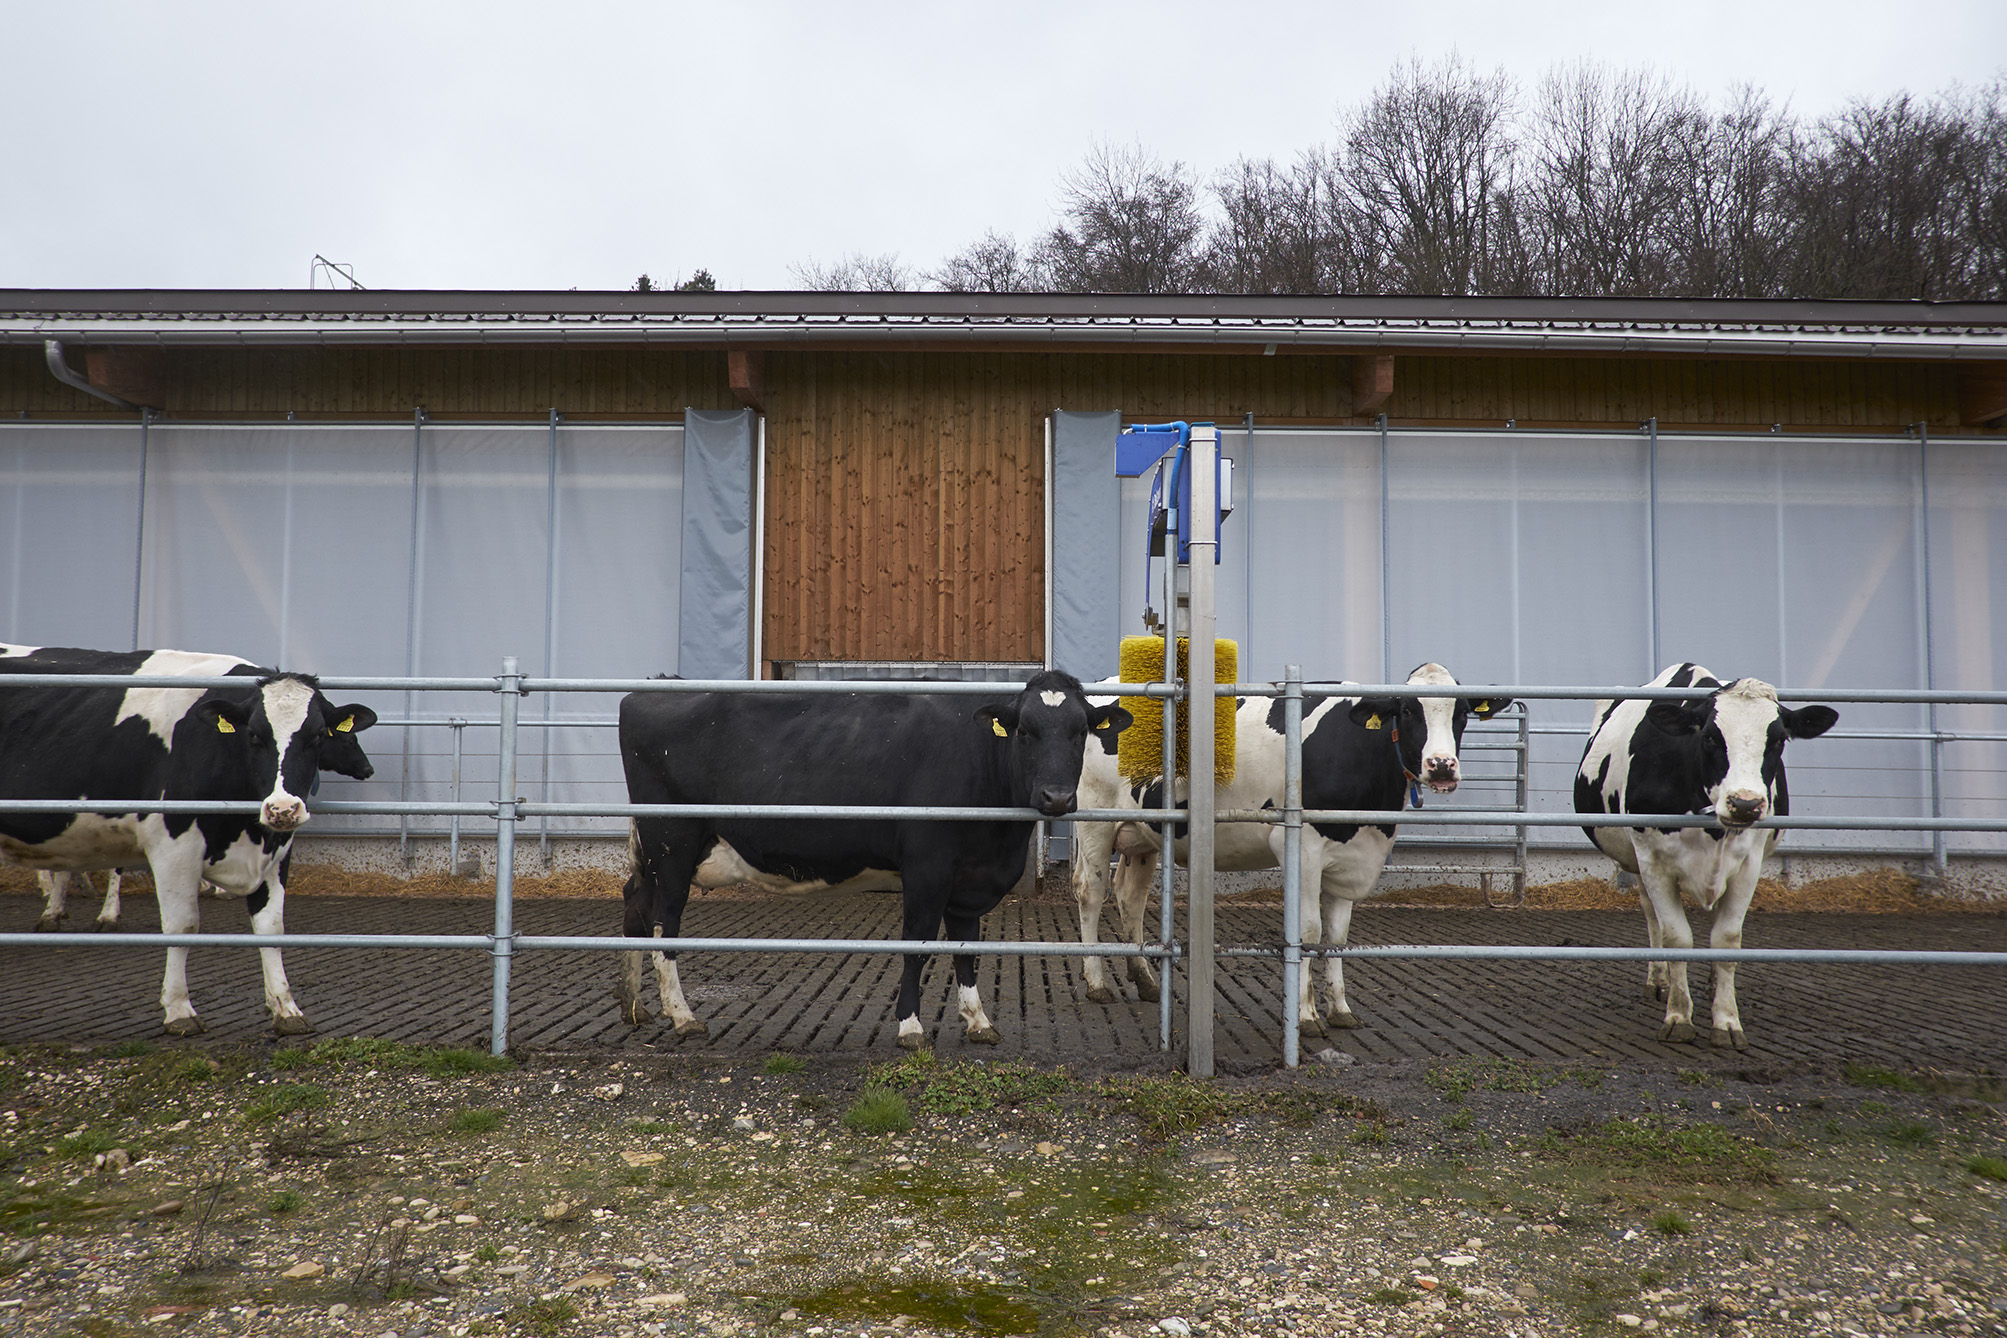 Jederzeit können die Kühe auf die Terrasse vor dem Stall. Die grossen Fenster lassen sich im Sommer dauerhaft öffnen.